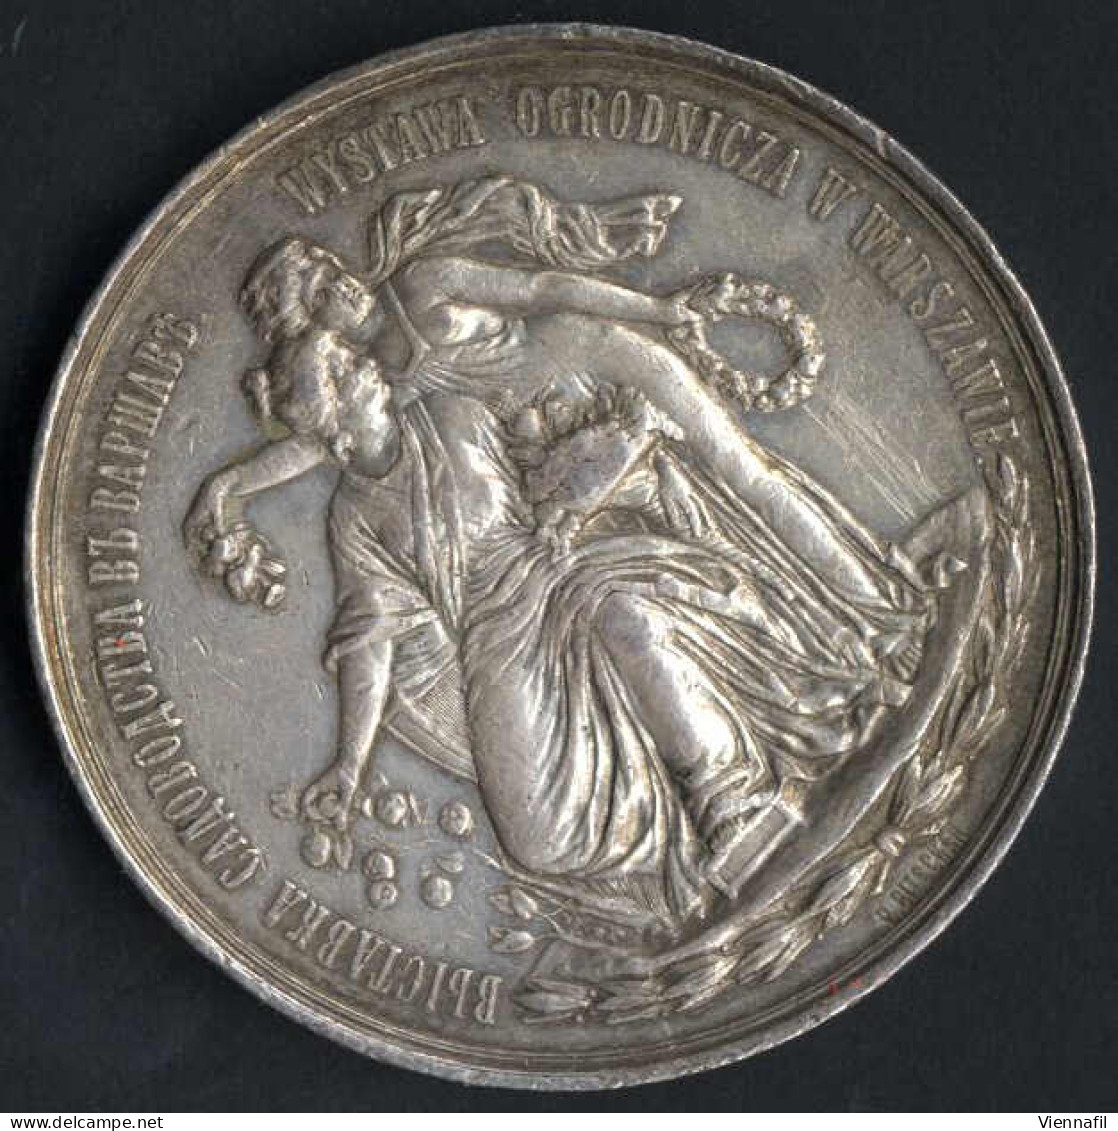 Medaille Der Warschauer Gartenbaugenossenschaft, Gartenbauausstellung Warschau 1895, Silbermedaille Von L. Steinman, Gep - Polen